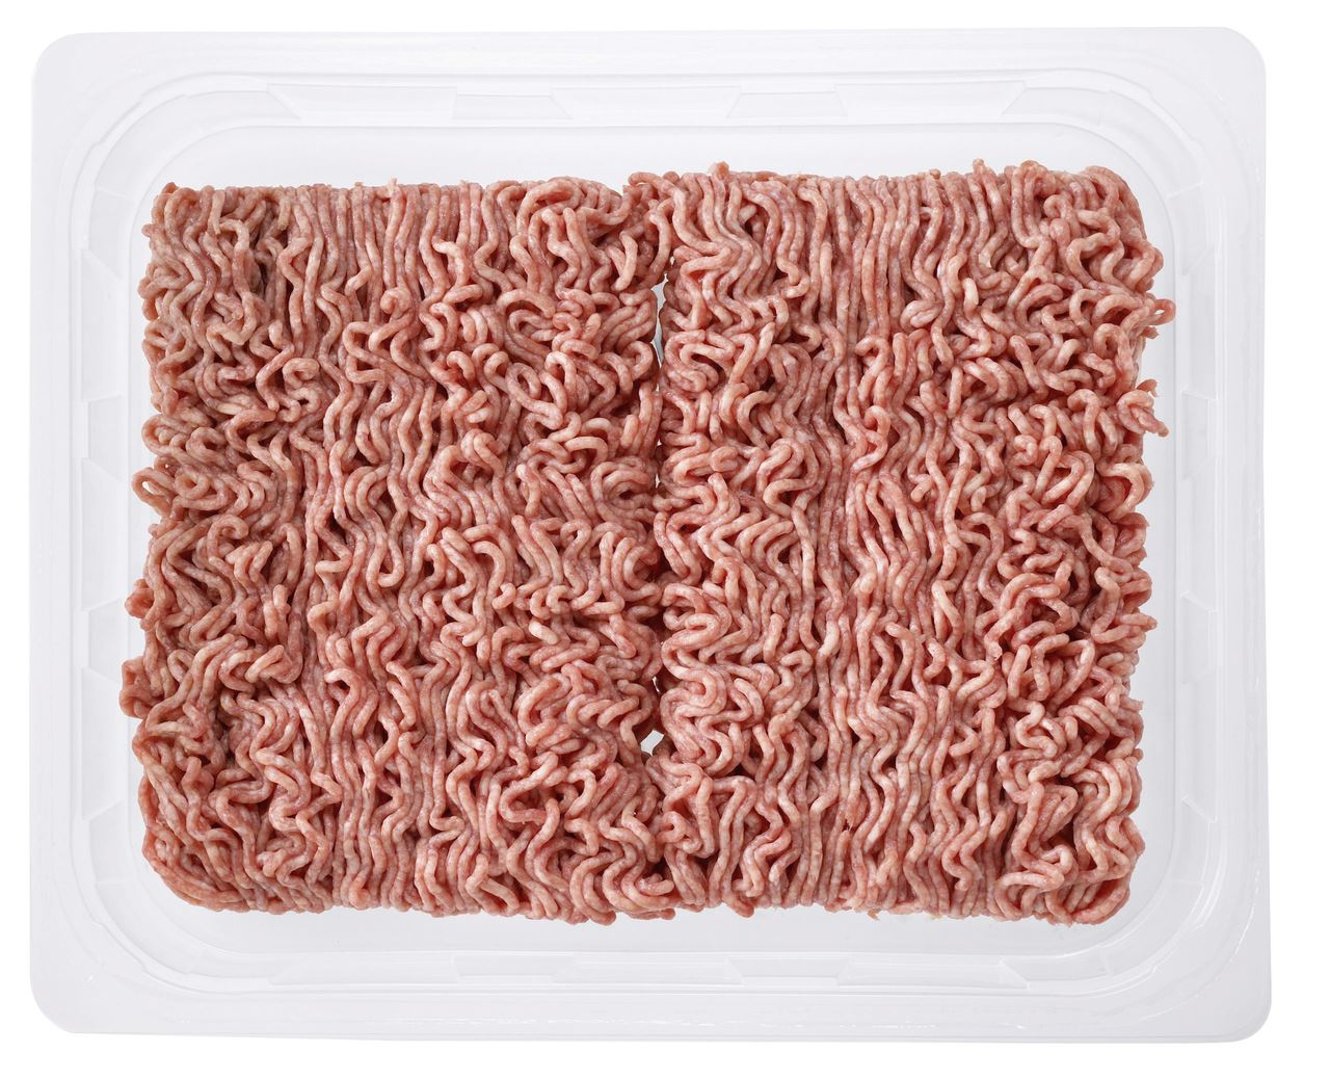 QS Schweinehackfleisch Atmos-verpackt ca. 1,5 kg Packung